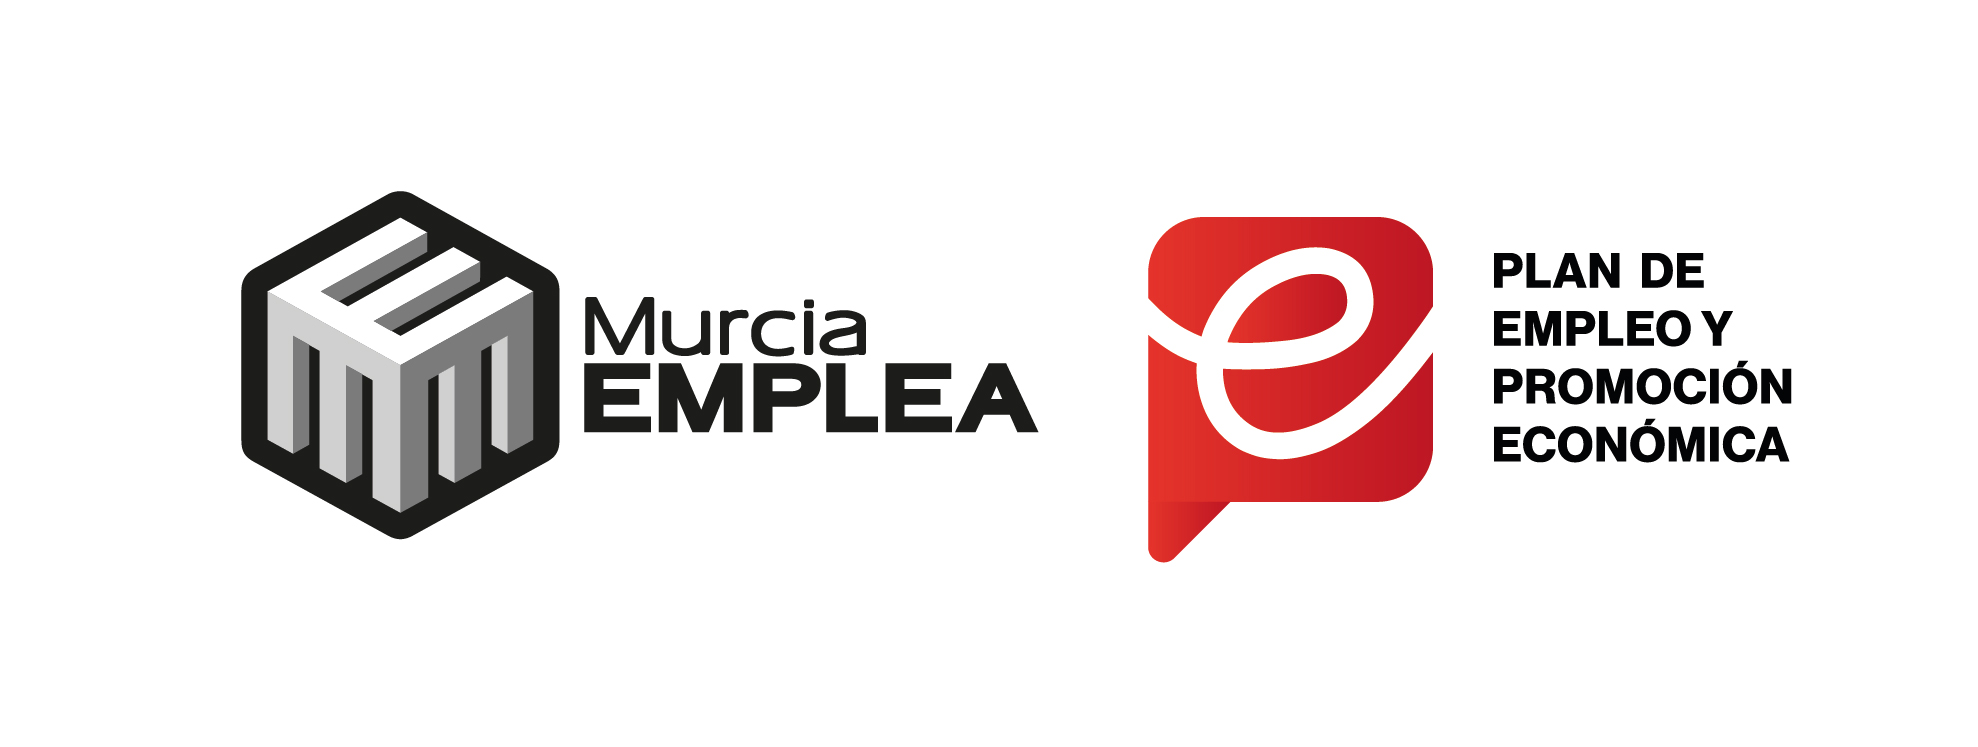 Alrededor impermeable Arado AEMA-RM – Asociación de Empresas de Medio Ambiente de la Región de Murcia